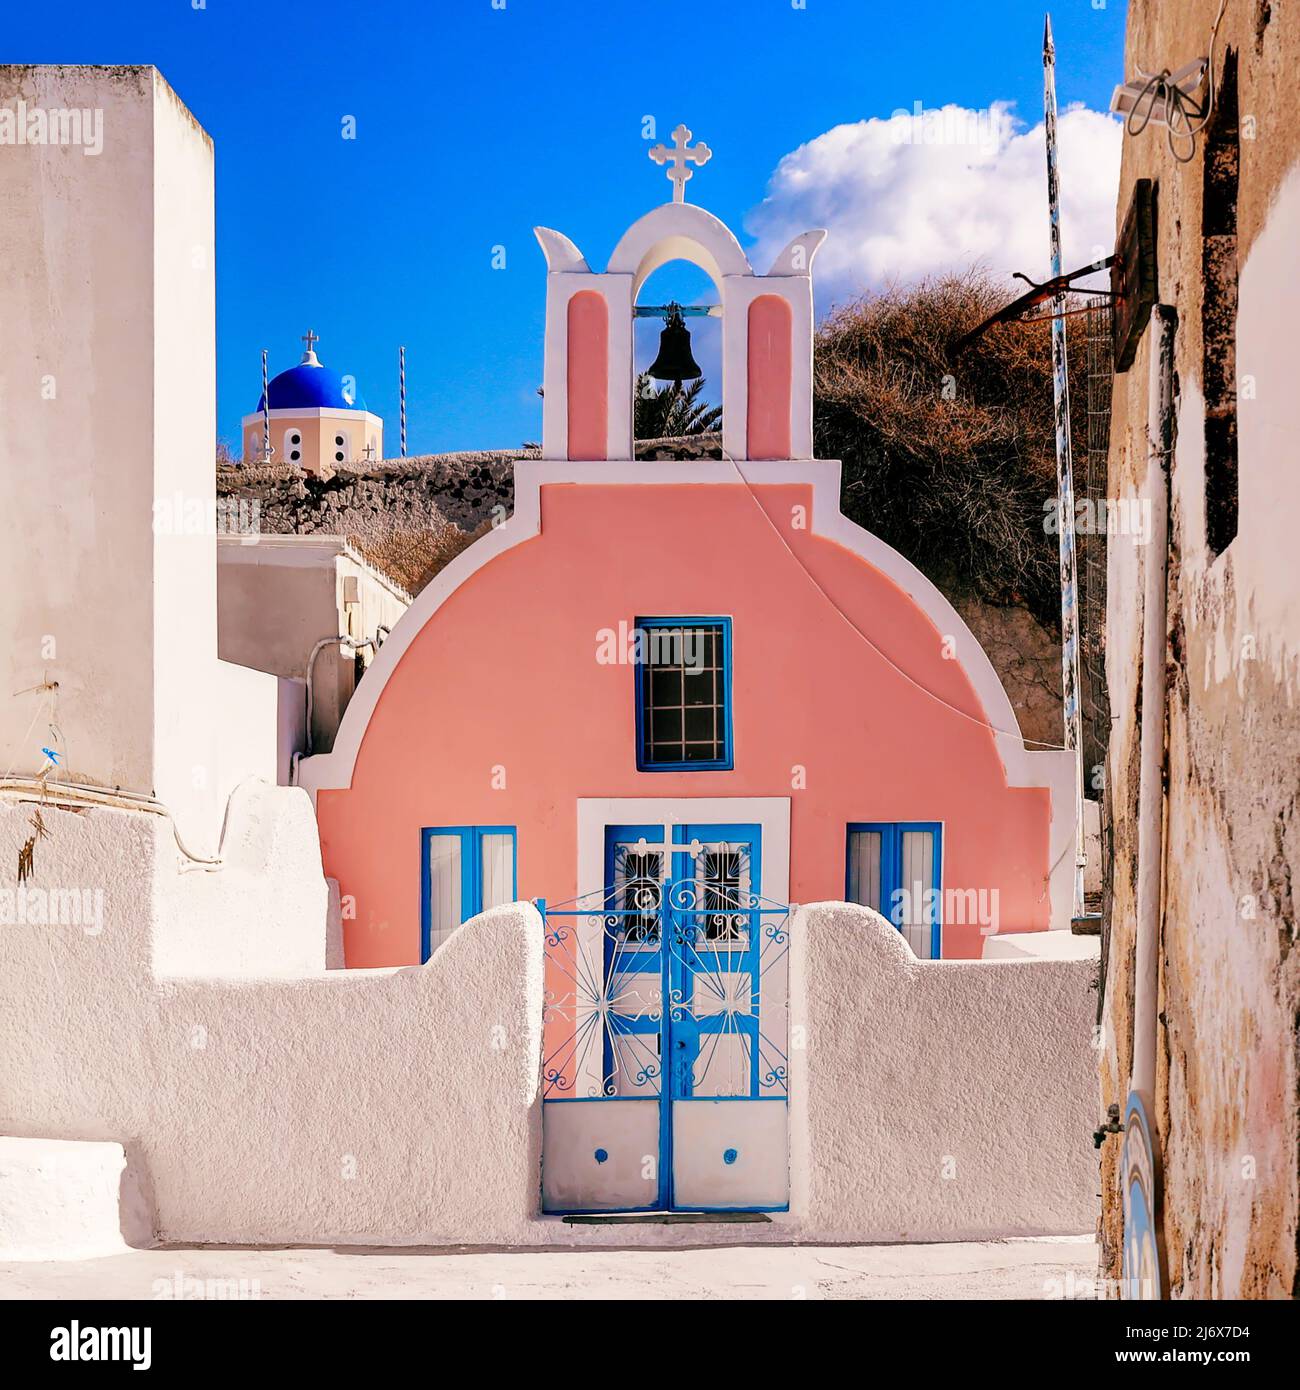 Oia, Santorini, Iles grecques, Grèce - jolie église grecque orthodoxe rose avec clocher et dôme bleu église derrière dans éblouissant soleil lumineux Banque D'Images